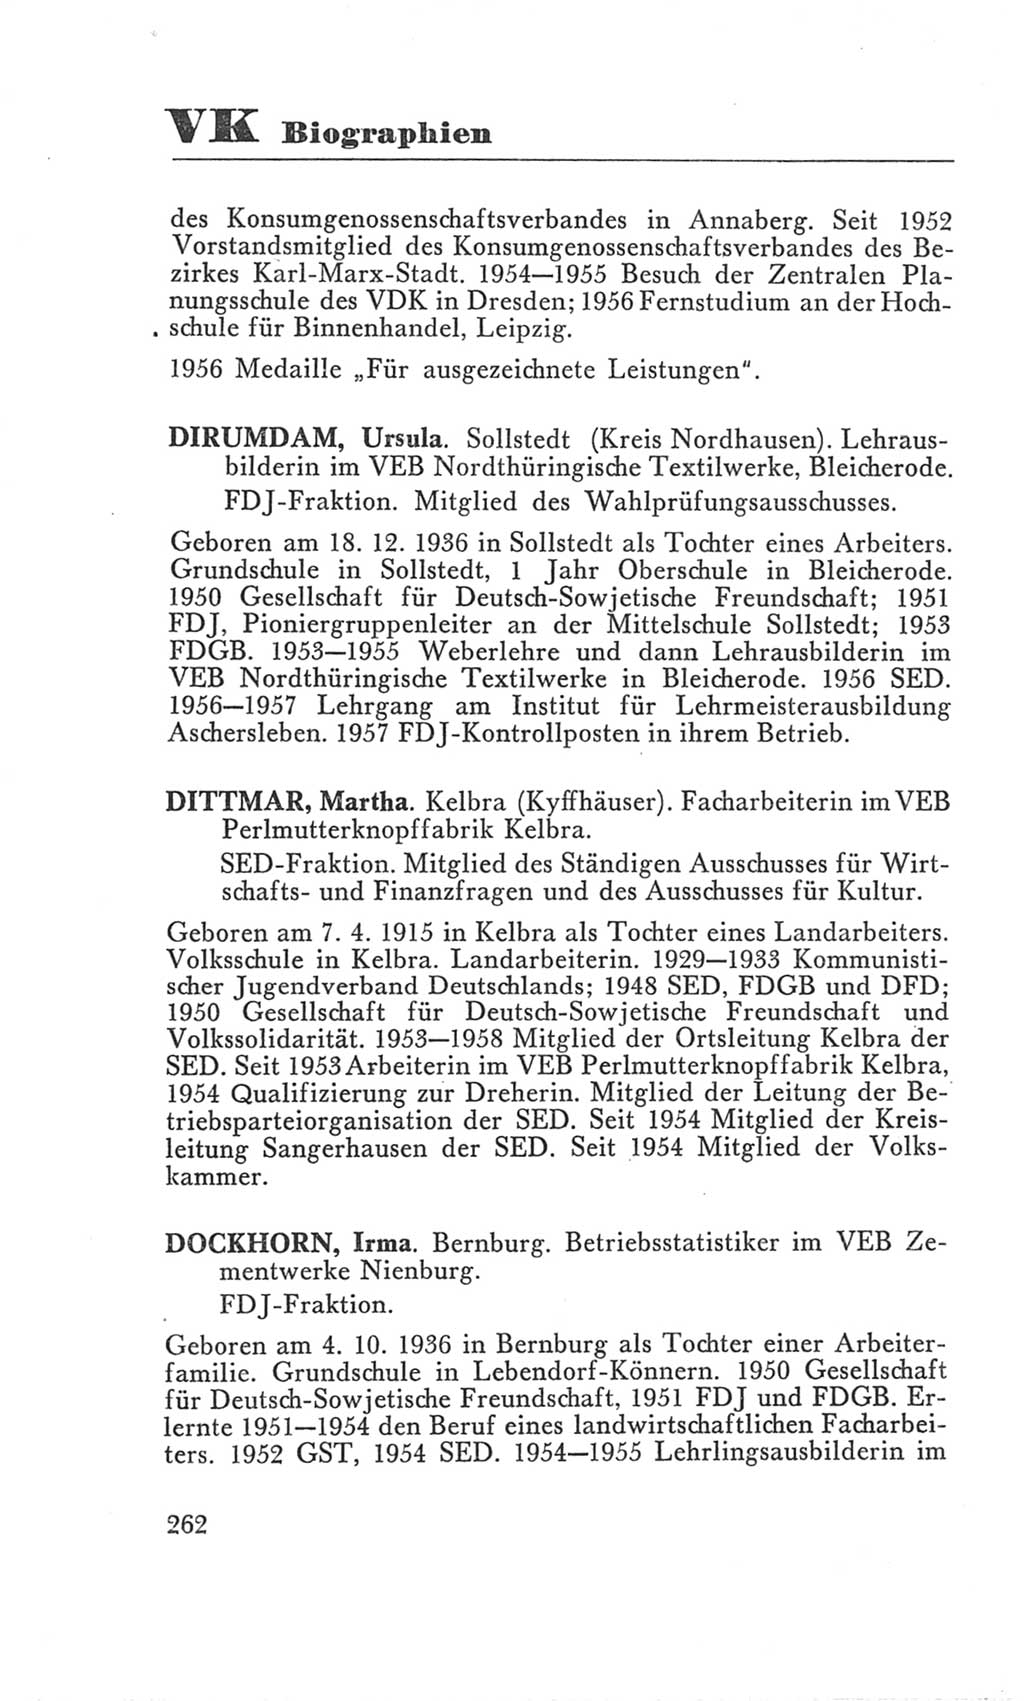 Handbuch der Volkskammer (VK) der Deutschen Demokratischen Republik (DDR), 3. Wahlperiode 1958-1963, Seite 262 (Hdb. VK. DDR 3. WP. 1958-1963, S. 262)